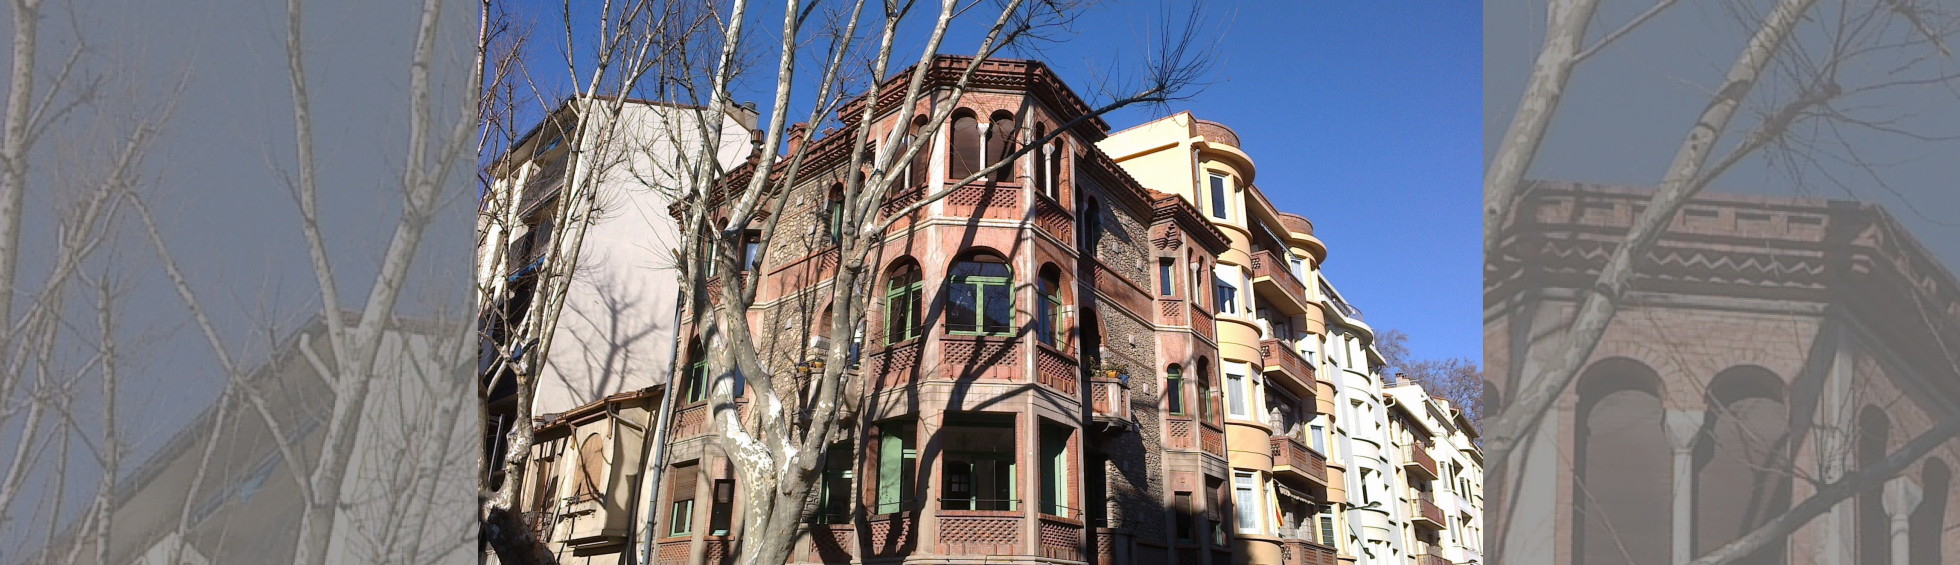 Maison de l'architecte Édouard Mas-Chancel, 1938, 9 rue Elie Delcros.